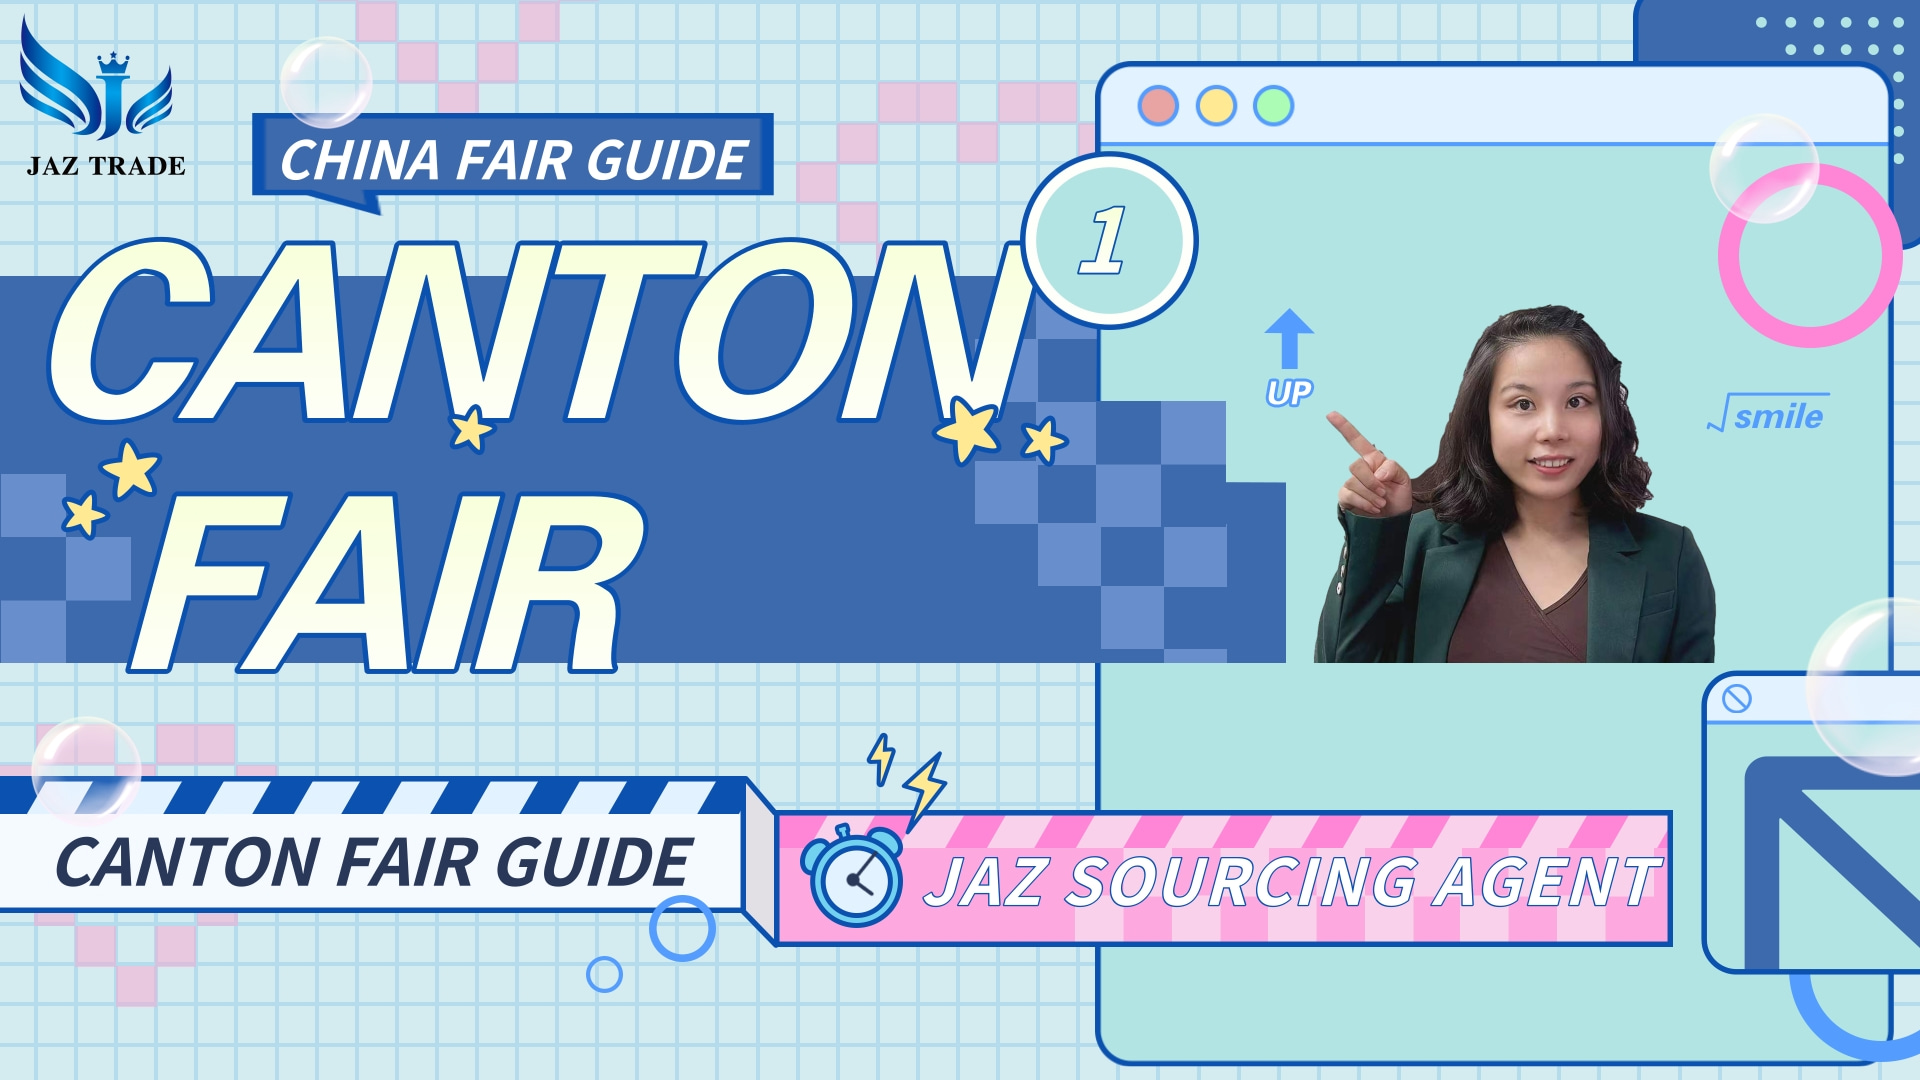 Canton Fair Visit| Canton Fair Guide China| Canton Fair China|La feria de Canton Guia| China fair